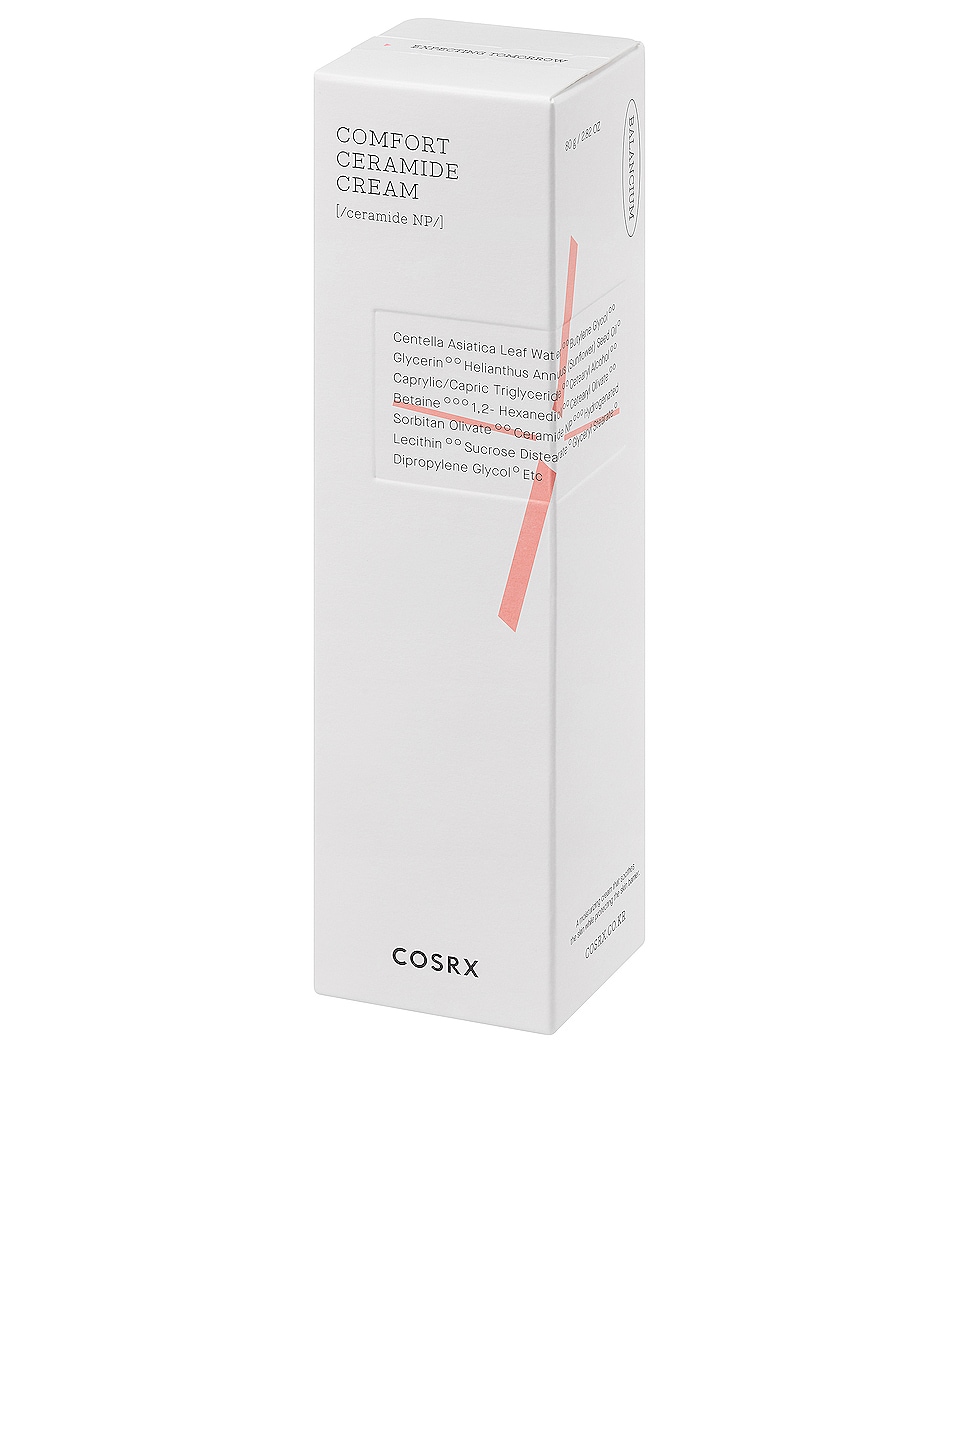 Shop Cosrx Balancium Comfort Ceramide Cream In N,a